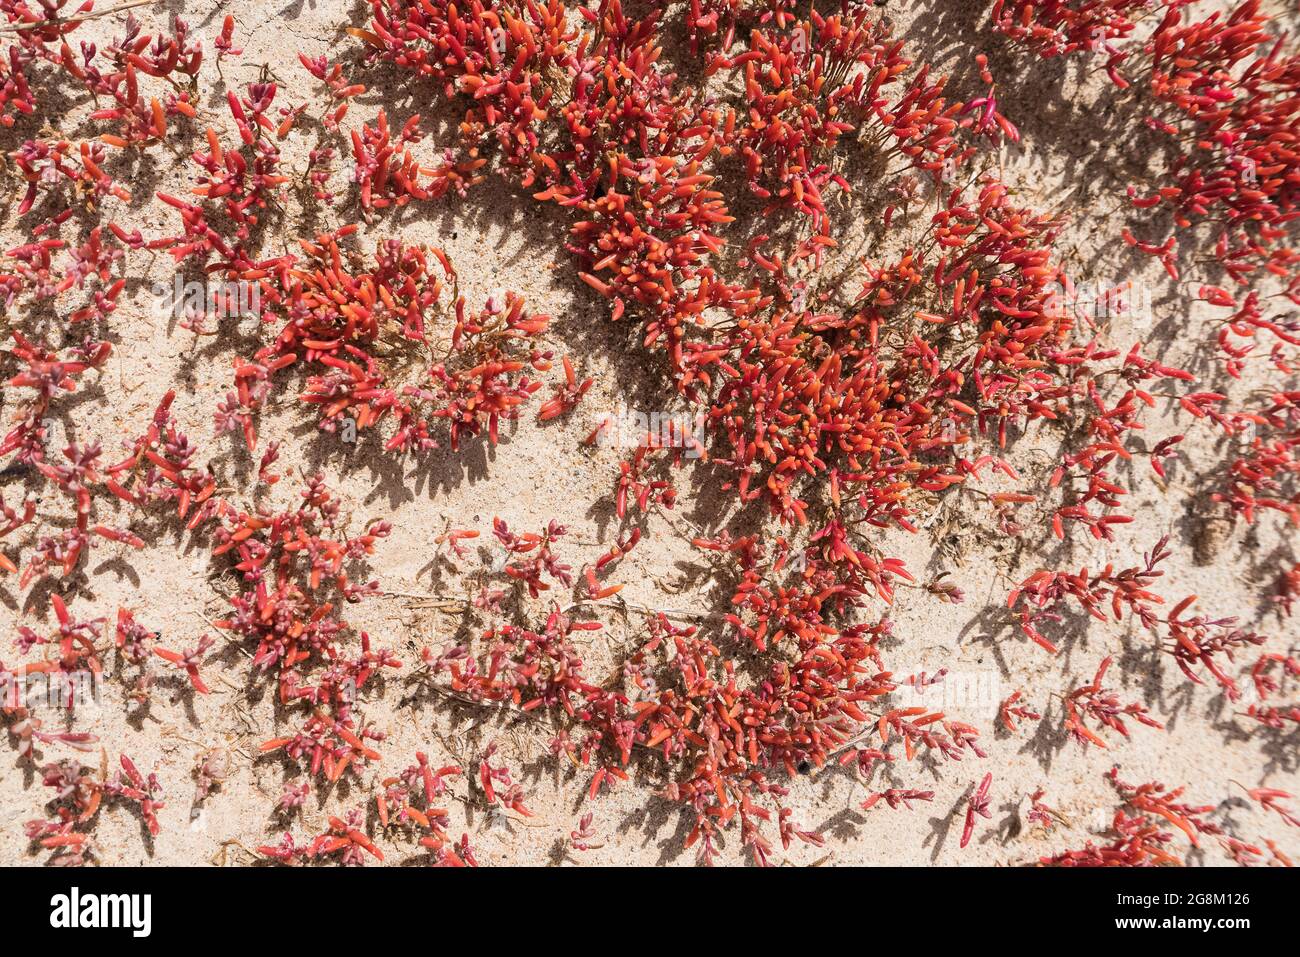 vista dall'alto sulla colonia di vetro rosso che cresce nella sabbia nelle giornate di sole Foto Stock